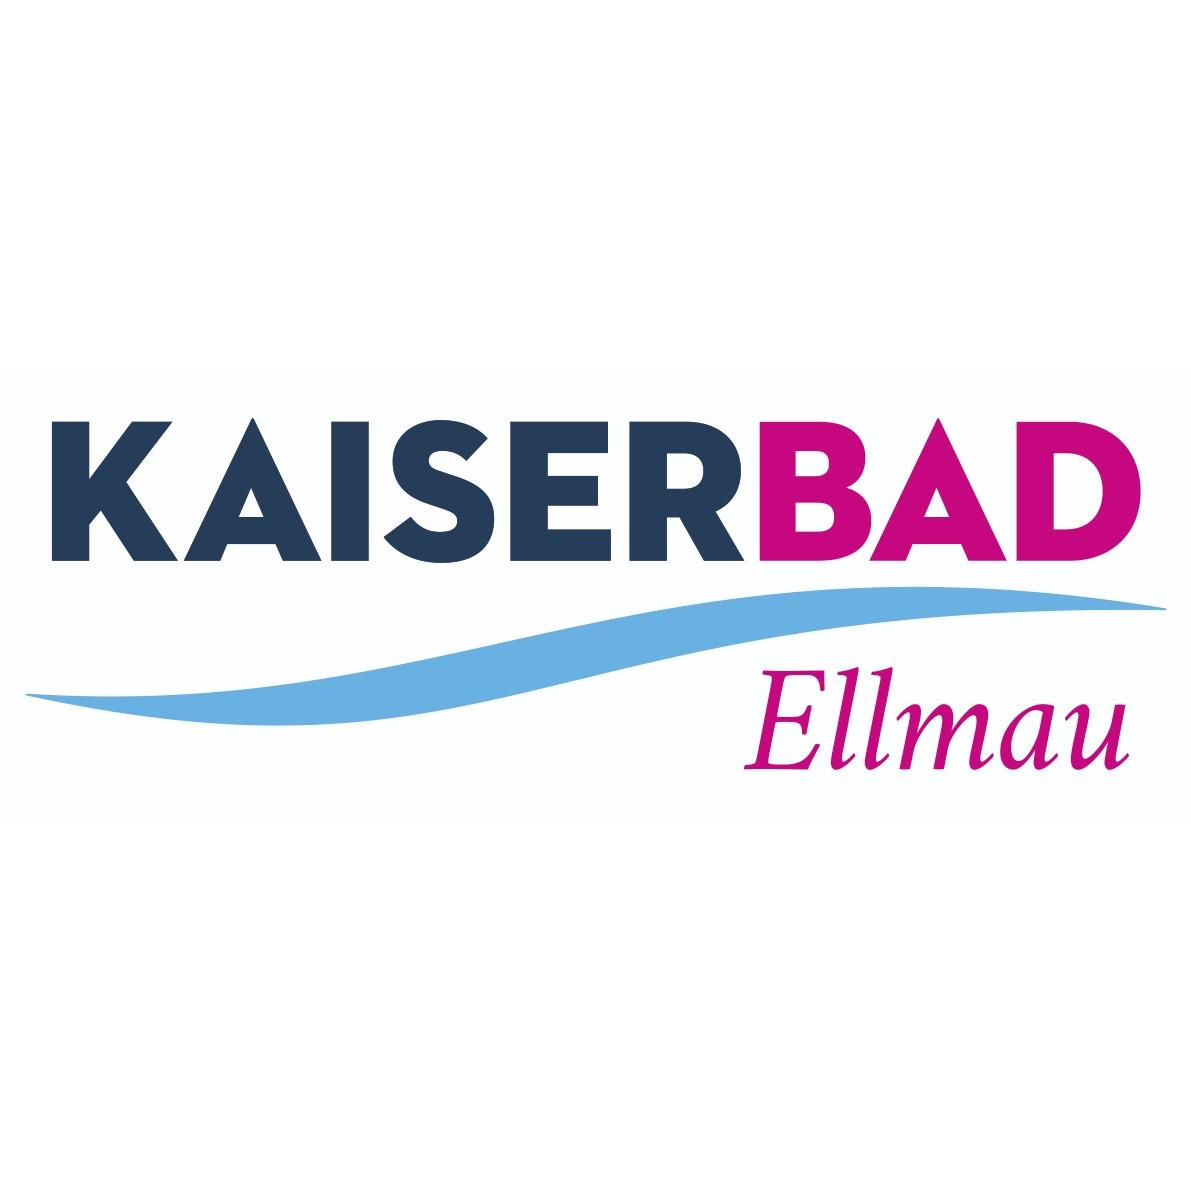 Kaiserbad Ellmau Freizeit- und Erholungszentrum GmbH & CO KG